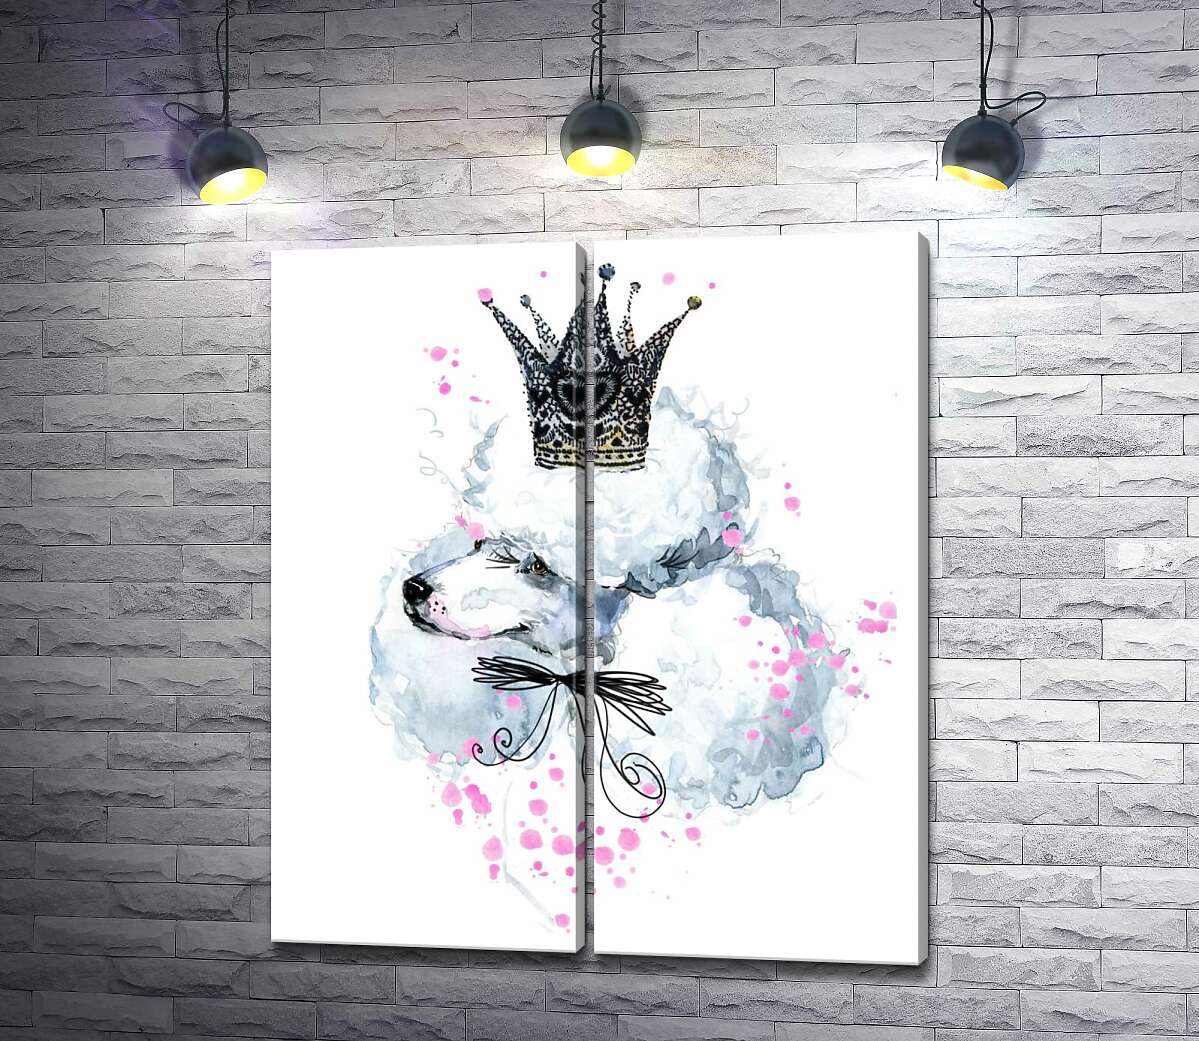 модульная картина Элегантный пудель с ажурной короной на голове